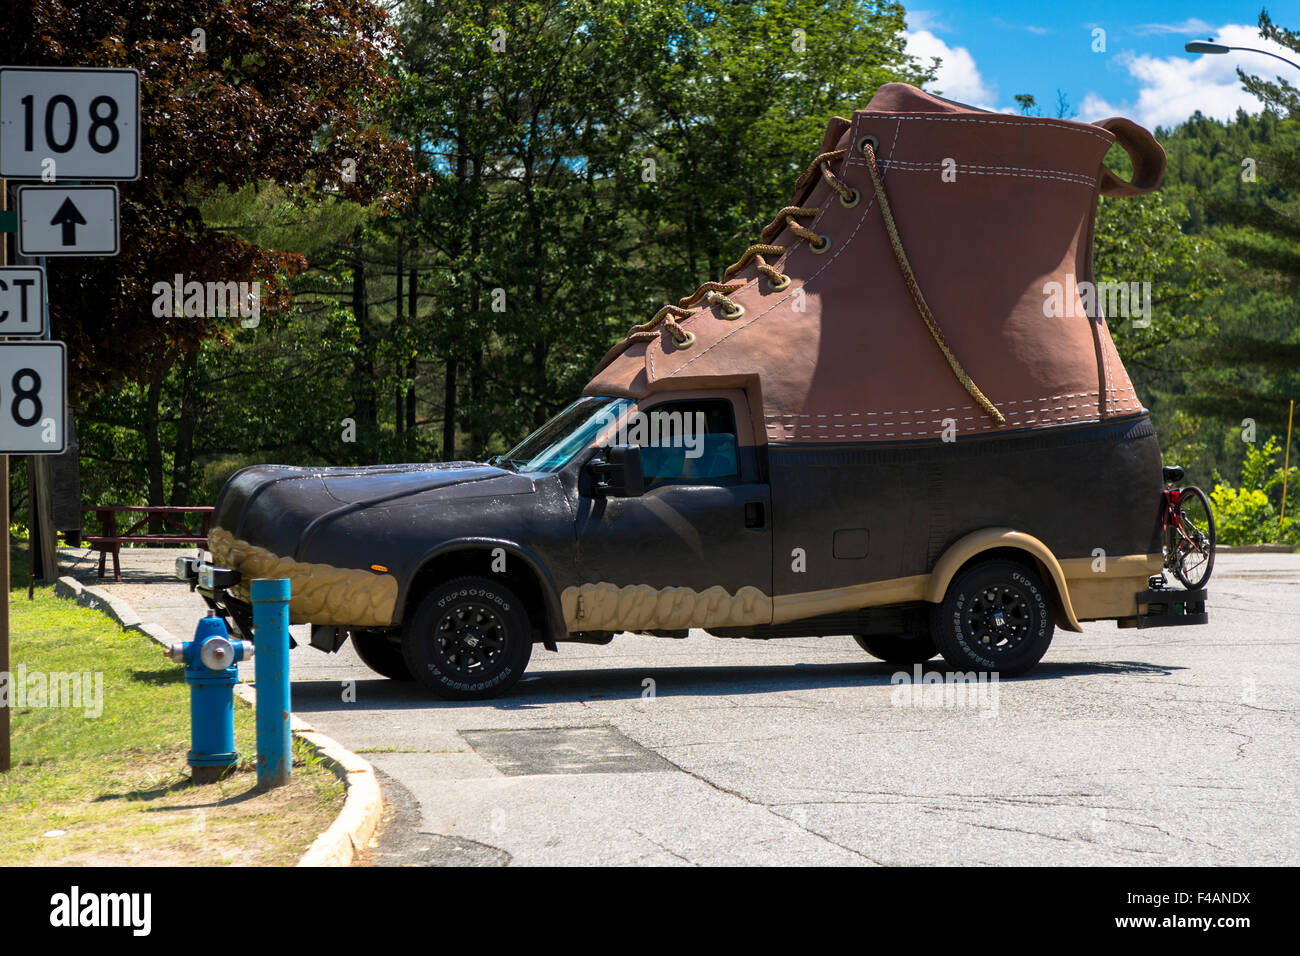 Promotion Ford Pickup für l.l. Bean in einem Parkhaus in der Form eines Stiefels Ente vollausgestattenen. Bekannt als die Bootmobile Stockfoto